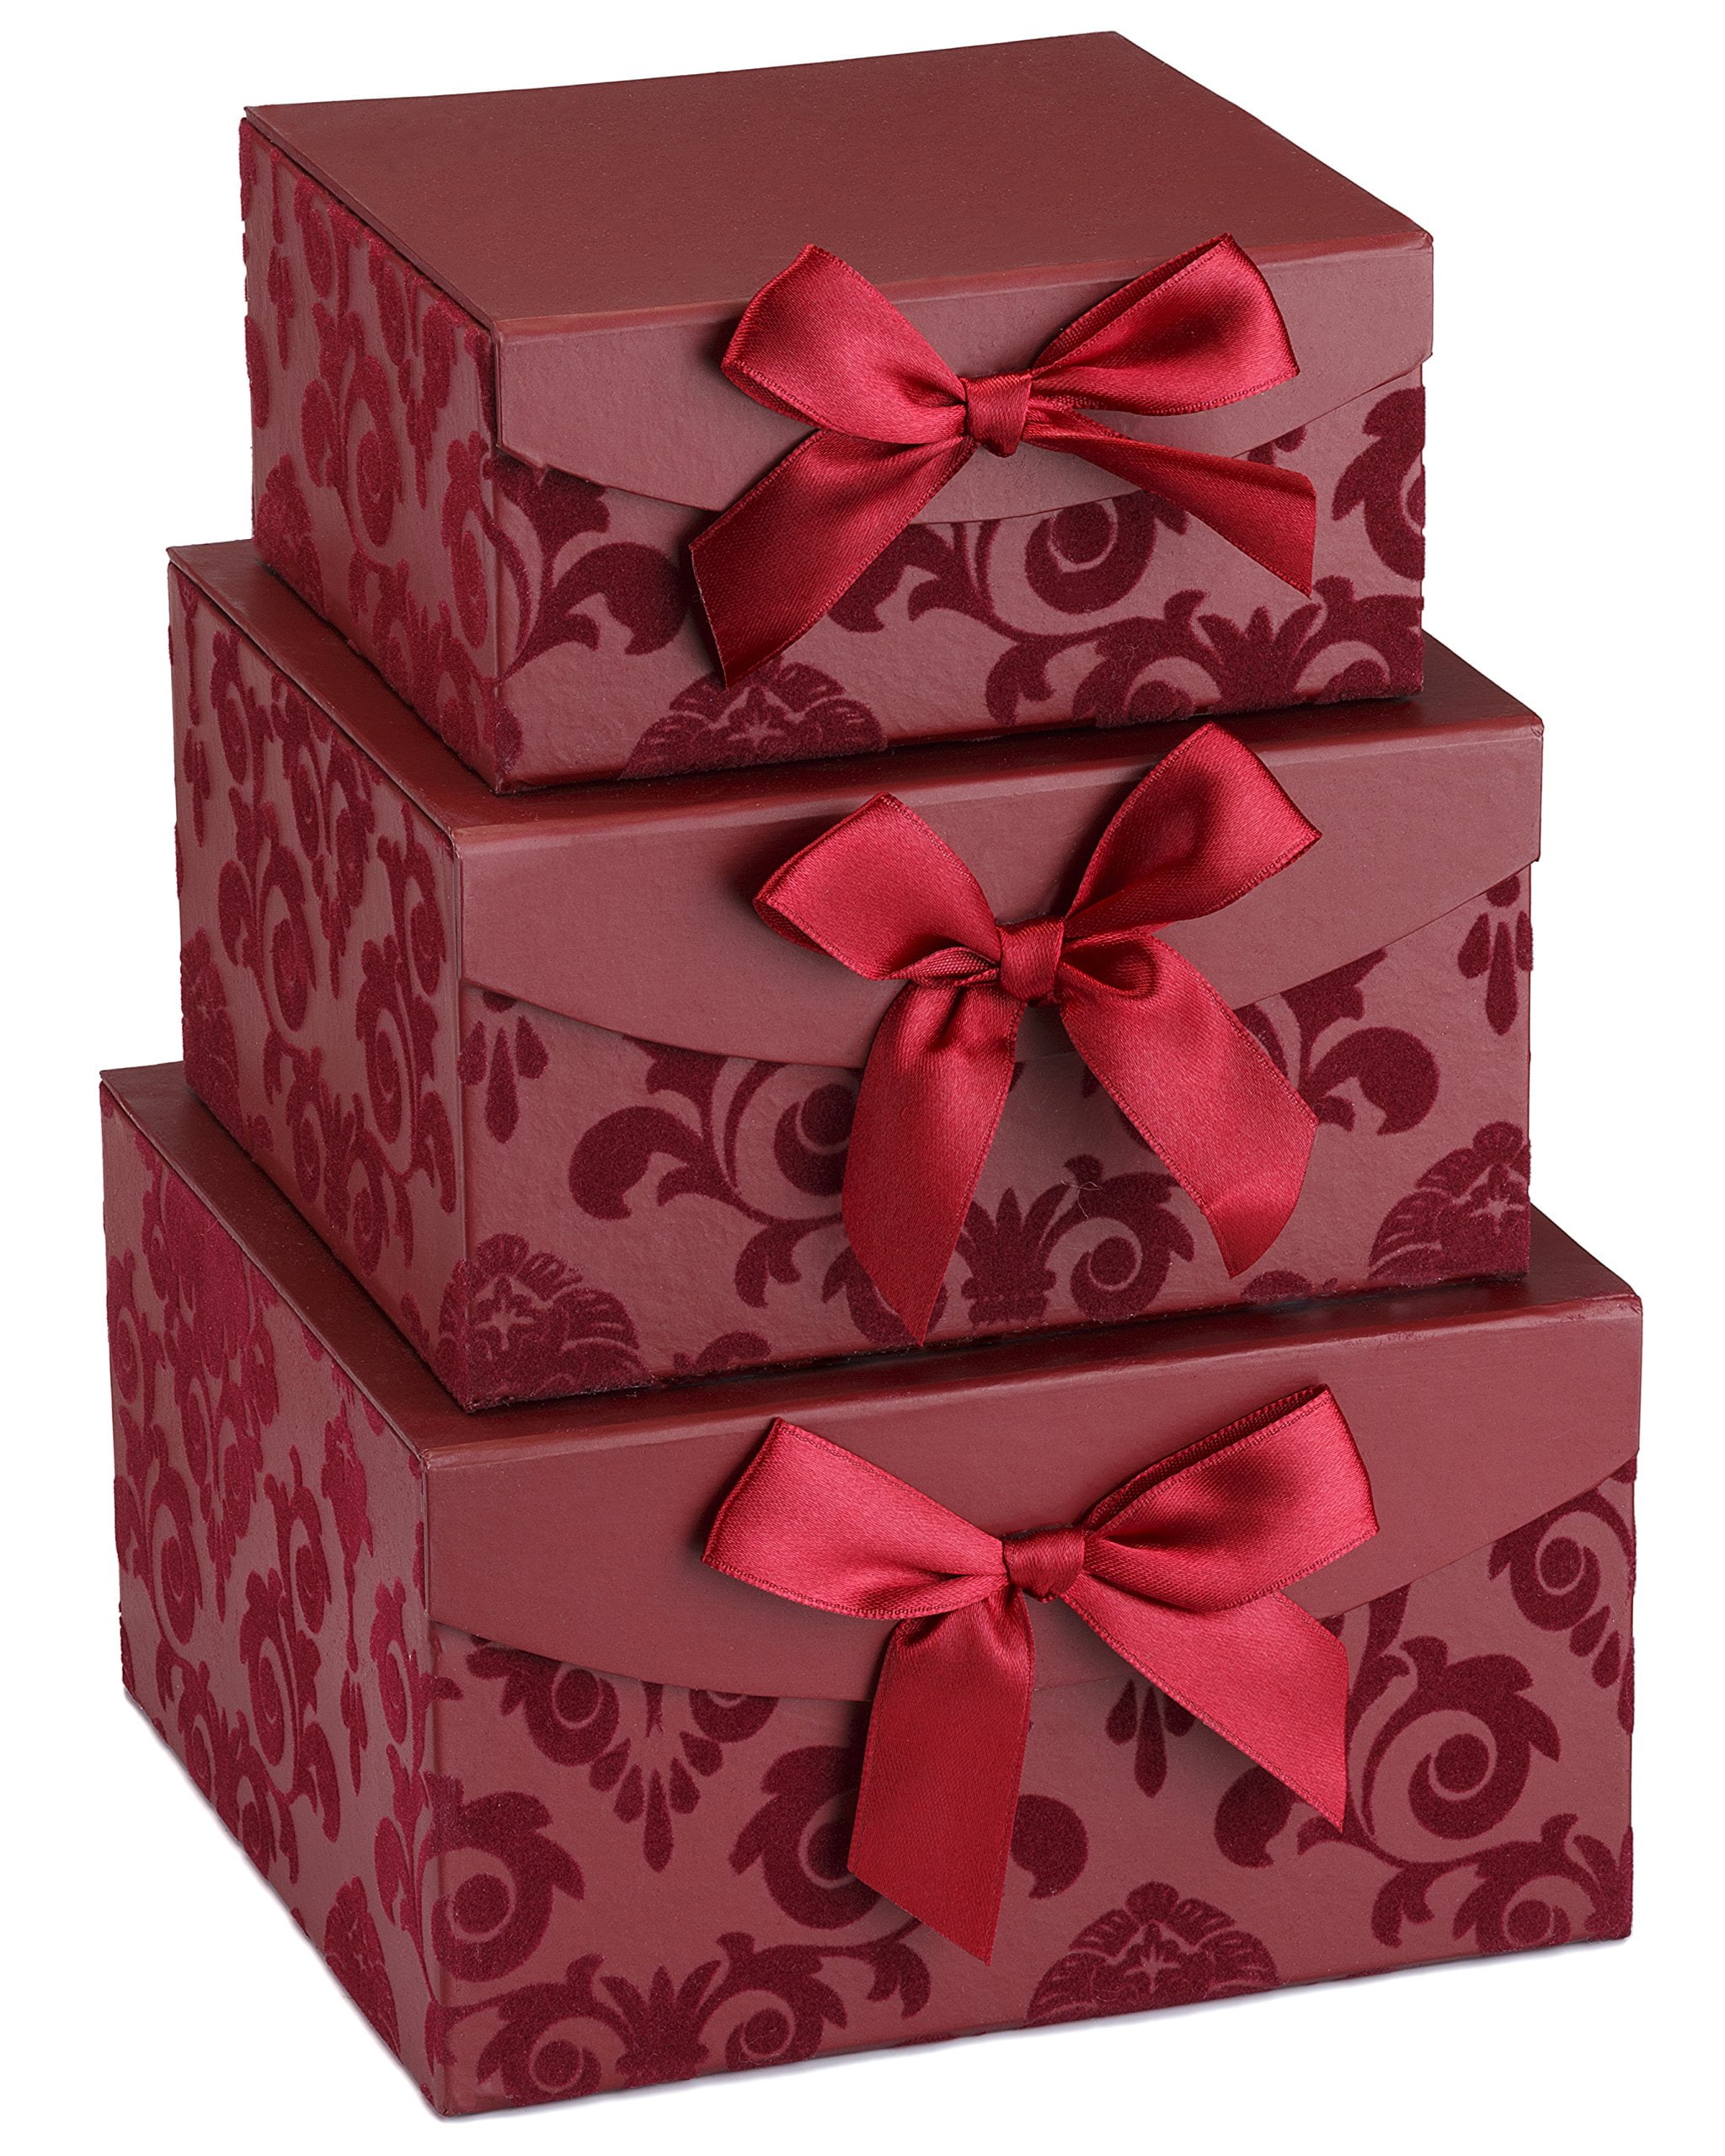 Gift boxes наборы. Подарочная упаковка. Подарочная коробочка. Коробки для подарков. Красивая подарочная упаковка.